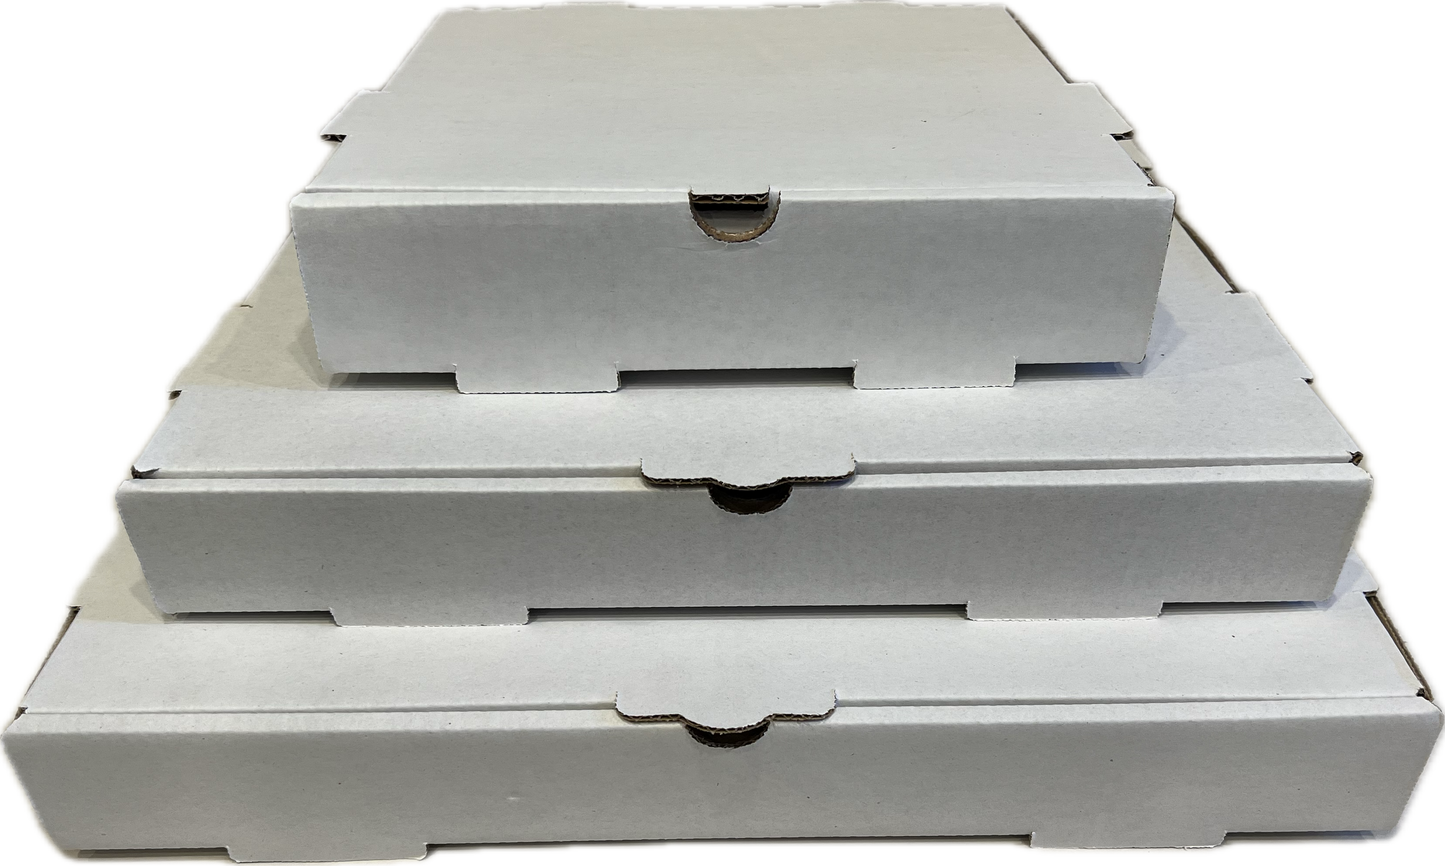 12 x 12 x 2 white pizza box